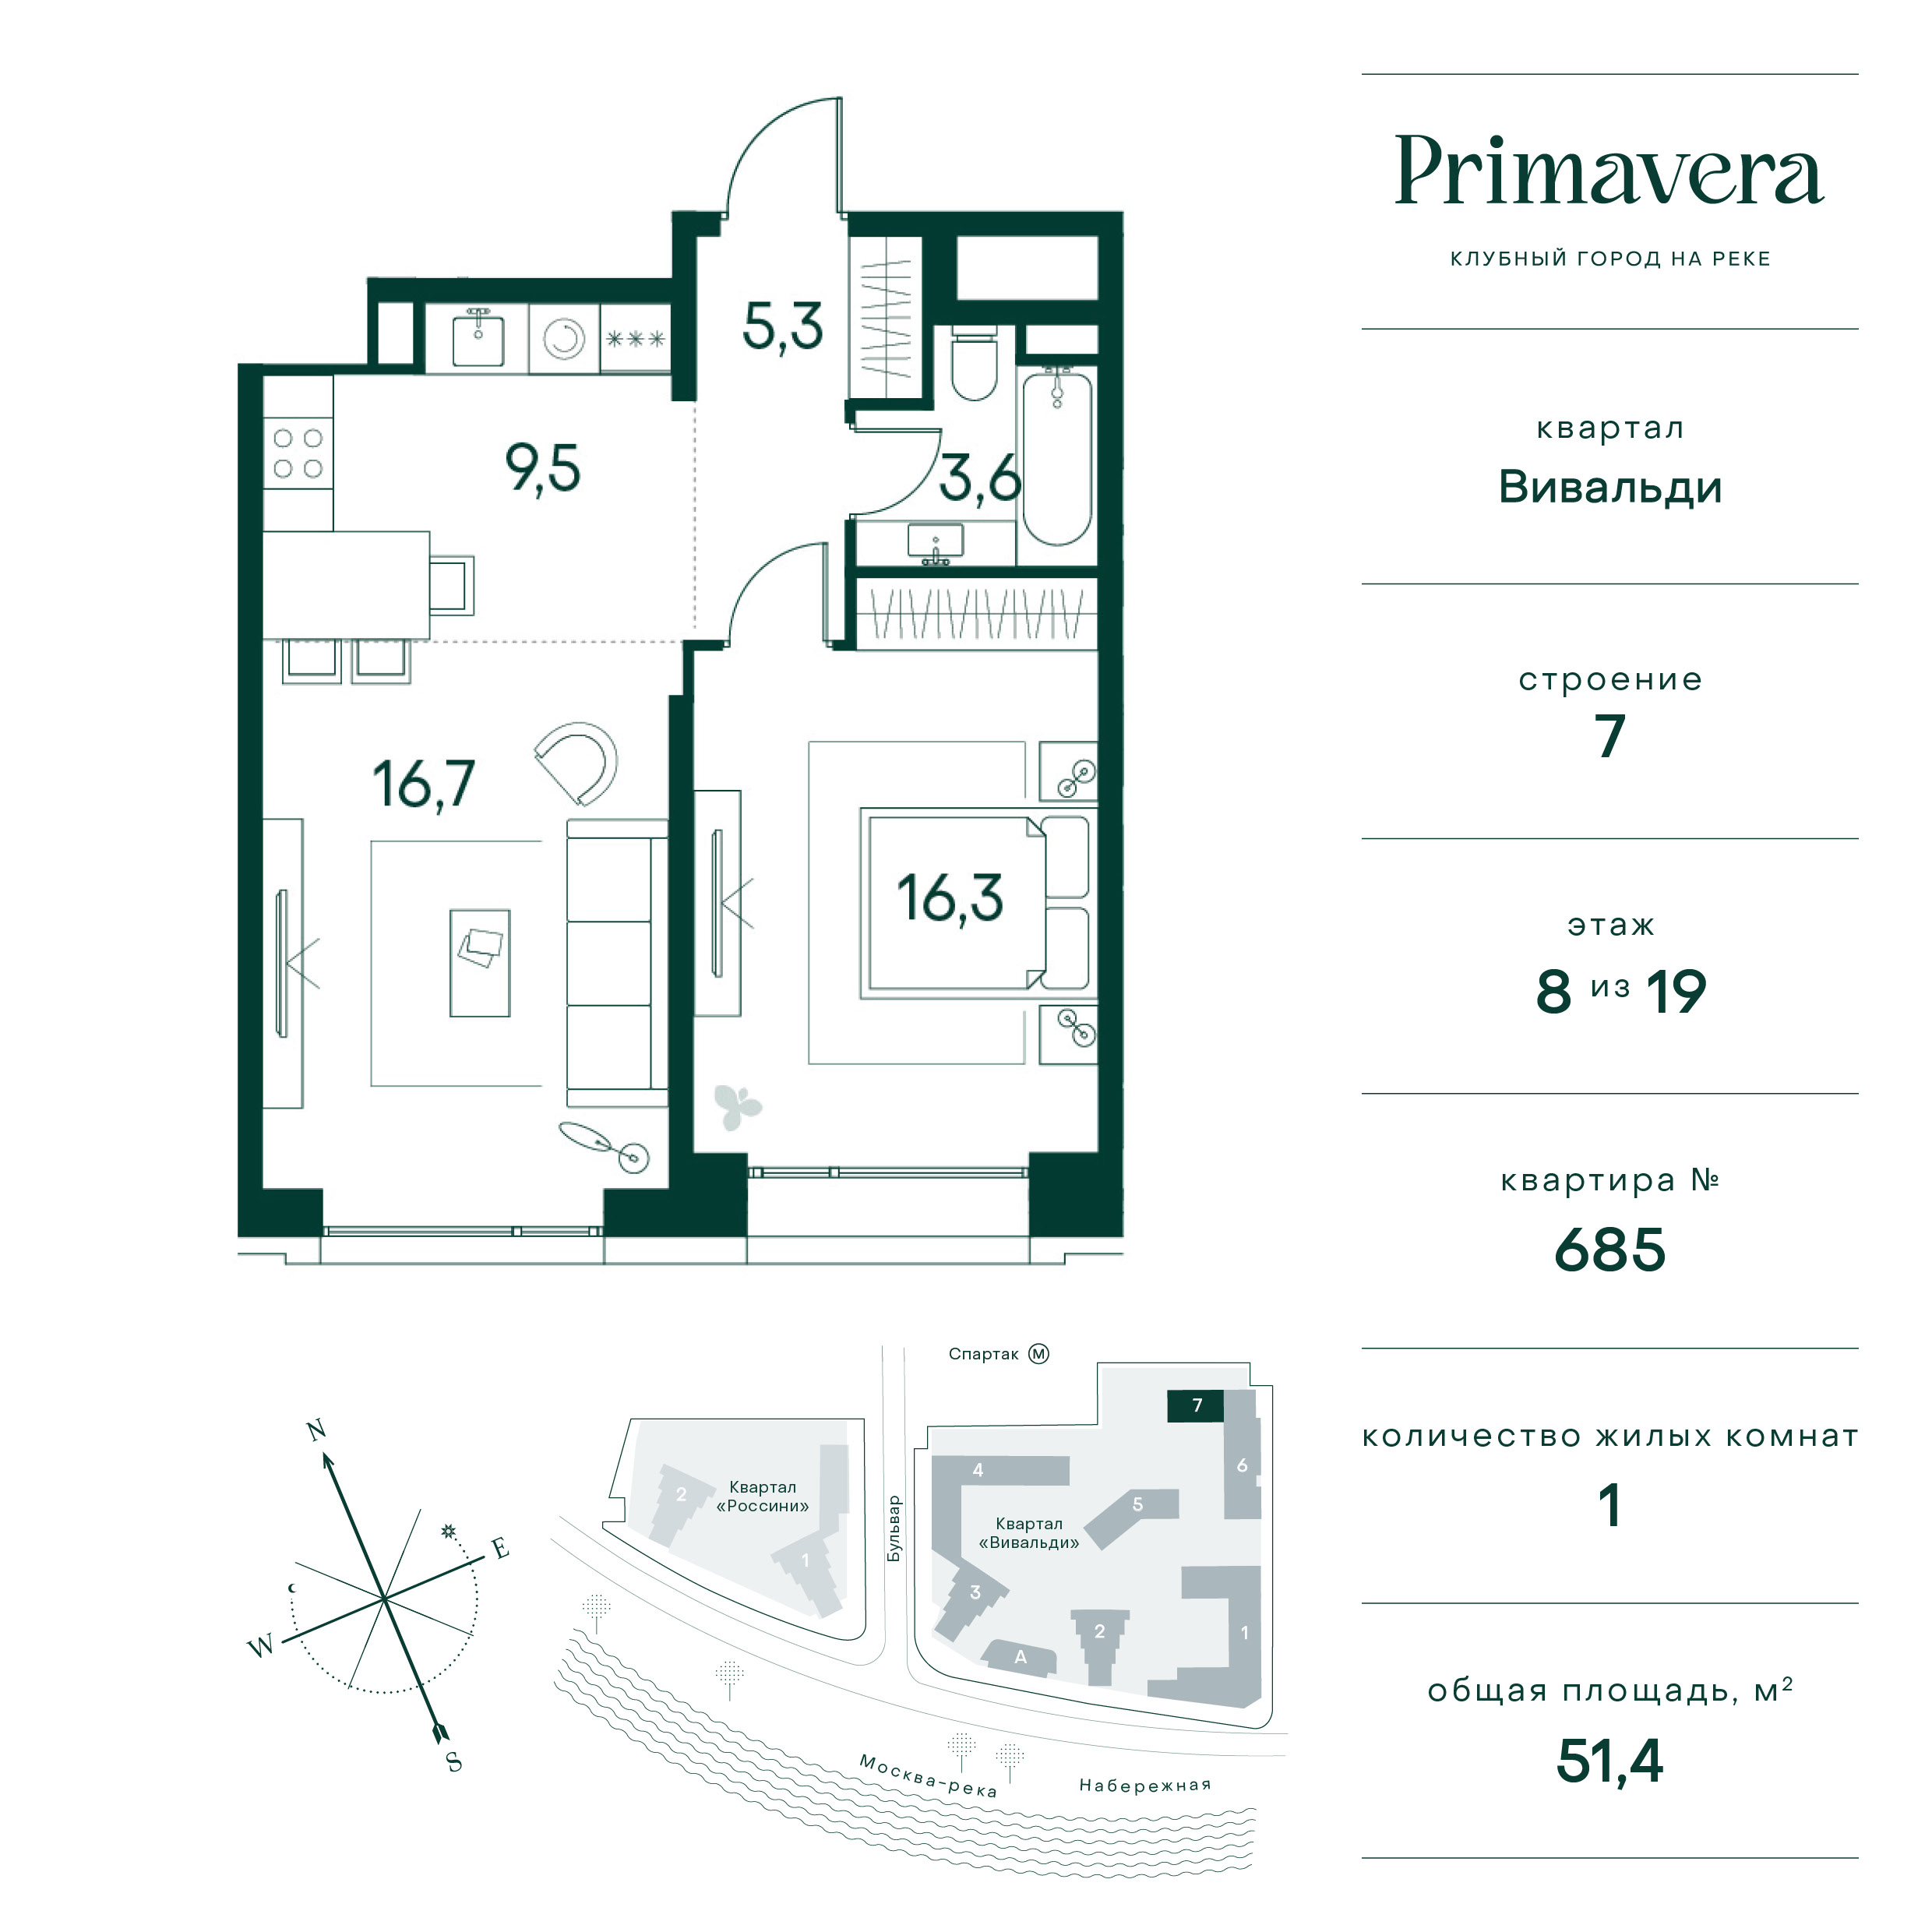 1 комн. квартира, 51.4 м², 8 этаж  (из 19)